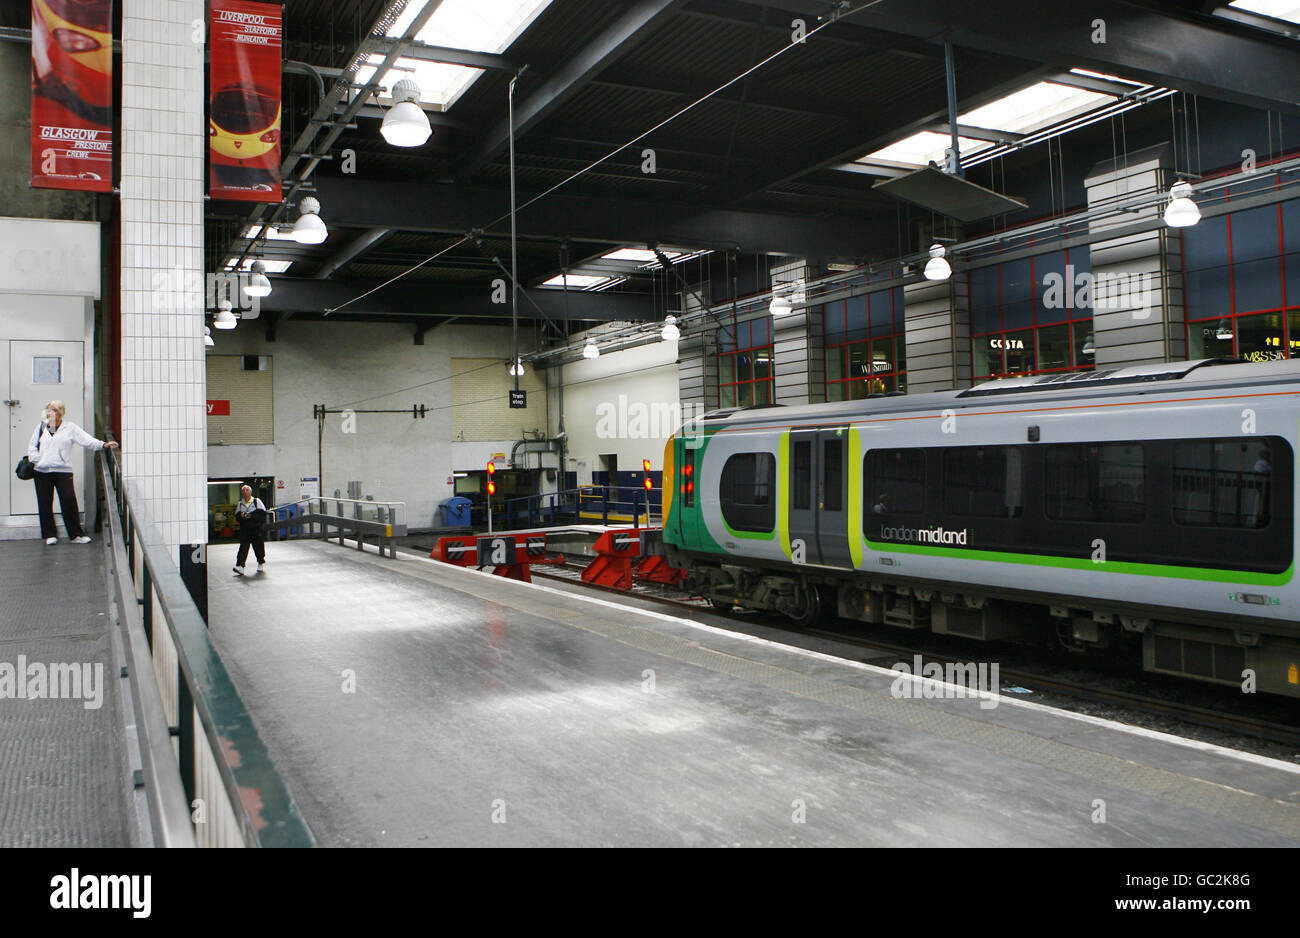 London Midland Trains annullato. Un treno London Midland è inattivo su una piattaforma ferroviaria alla stazione di Euston a Londra. Foto Stock